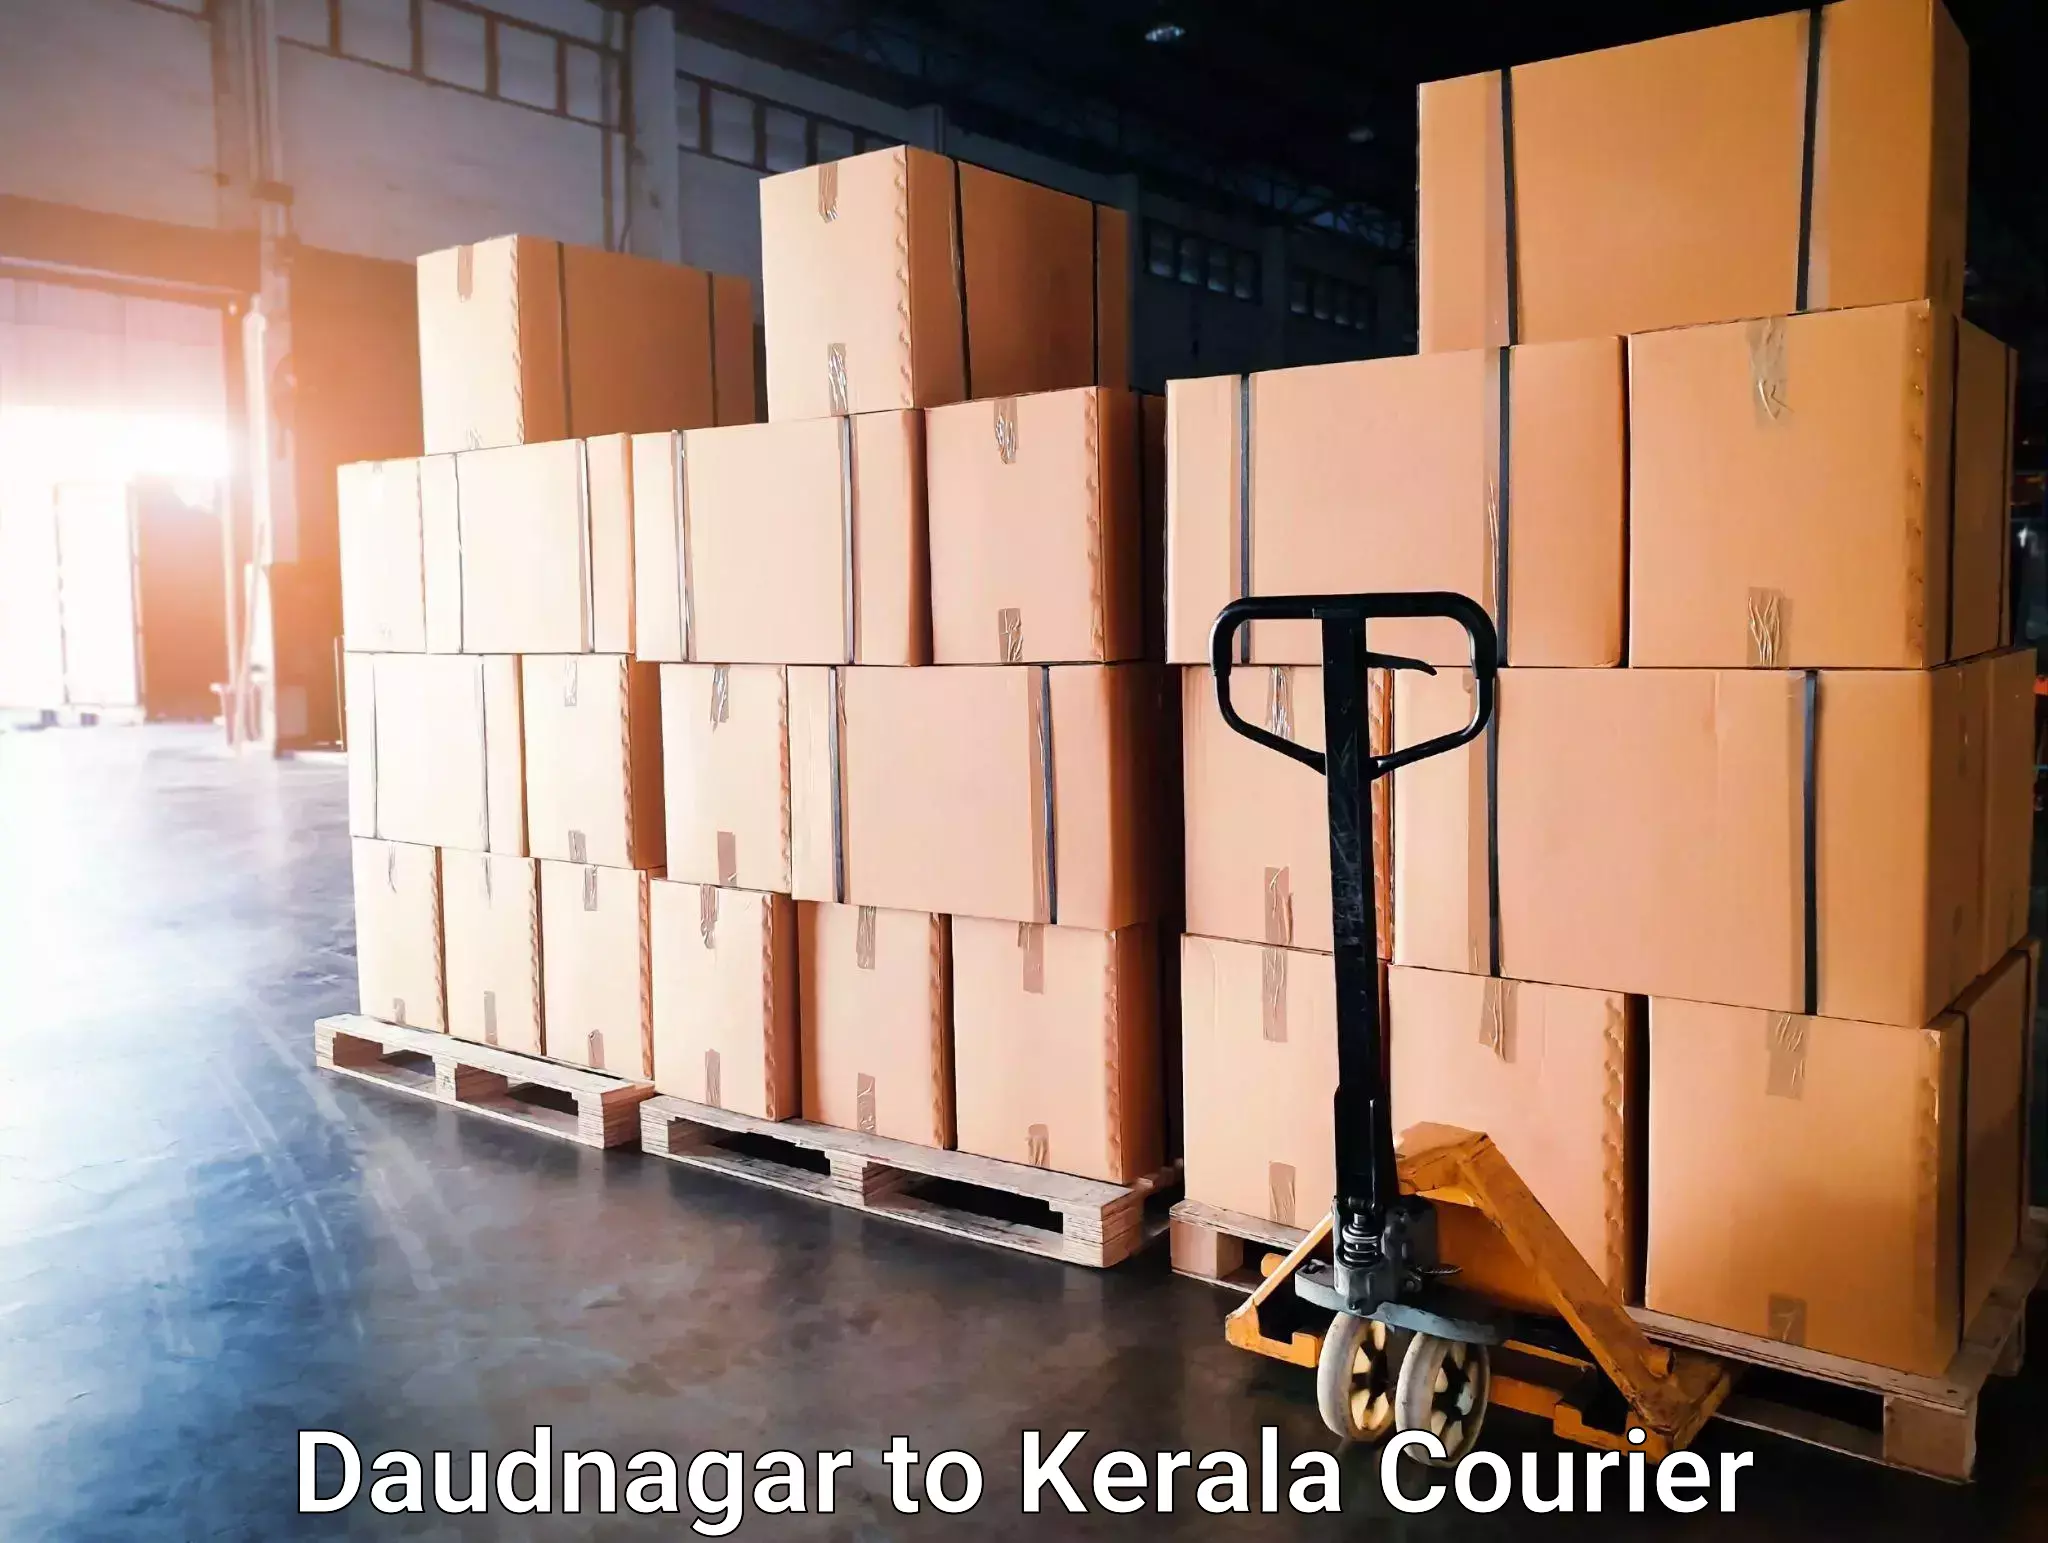 Trusted moving company Daudnagar to Kerala